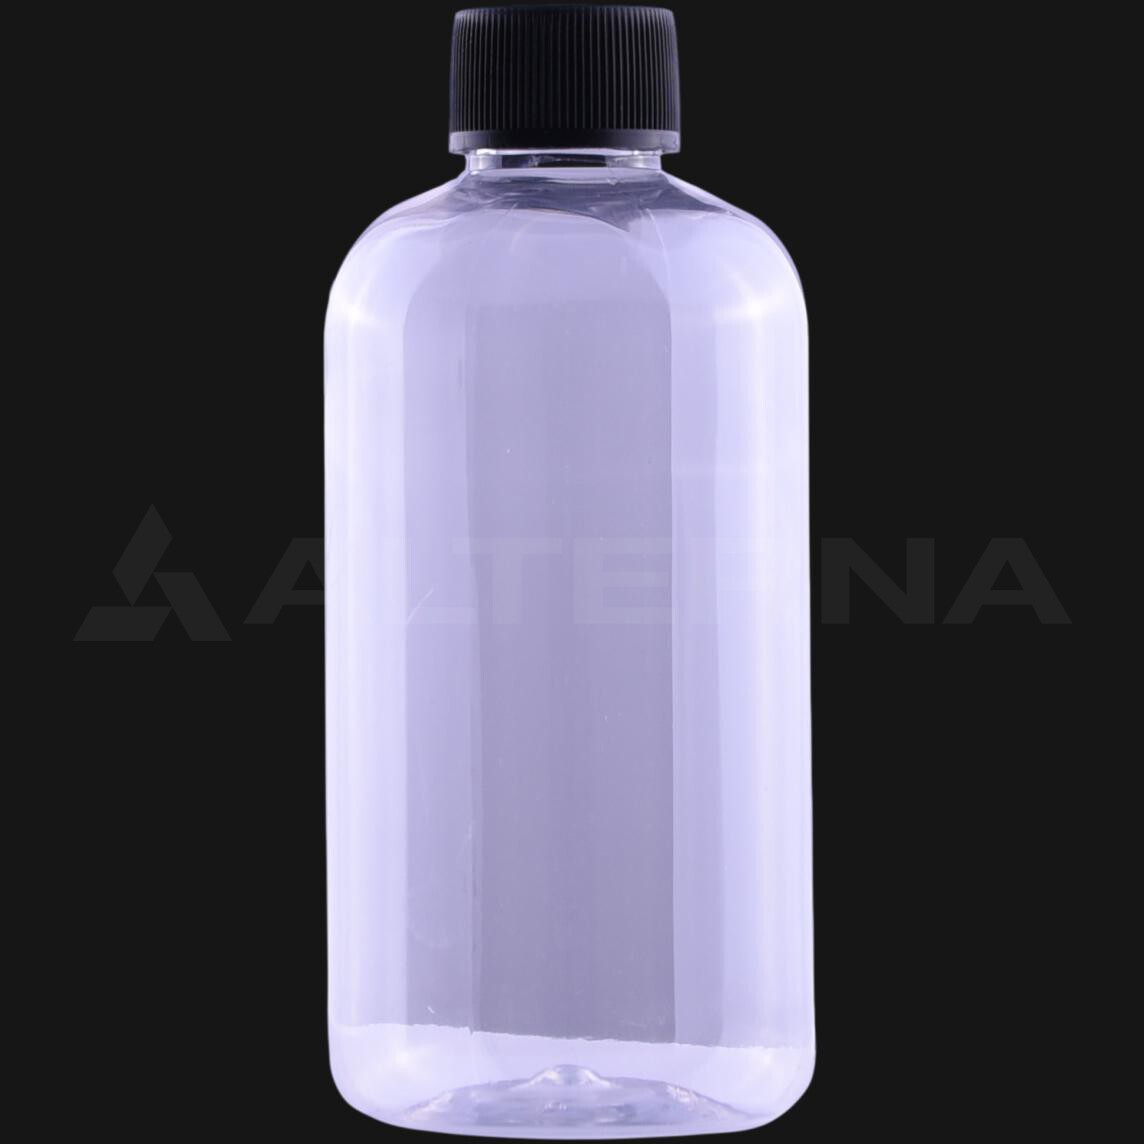 250 ml PET Bottle with 24 mm Foam Seal Cap